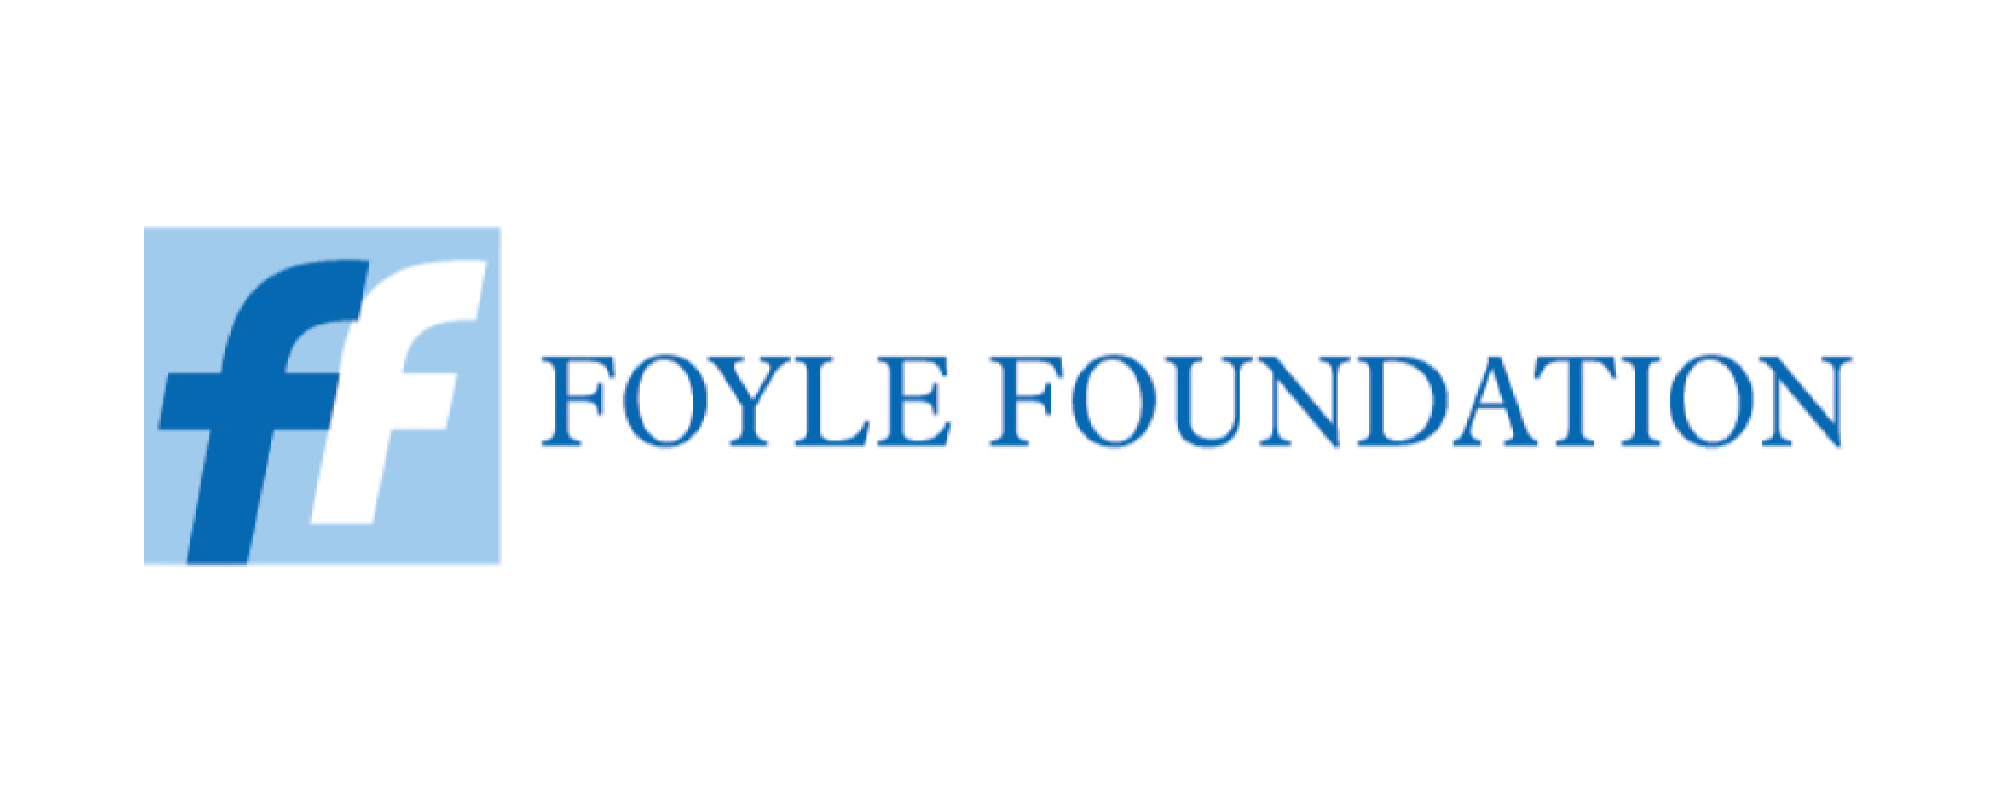 Foyle Foundation (resized).png